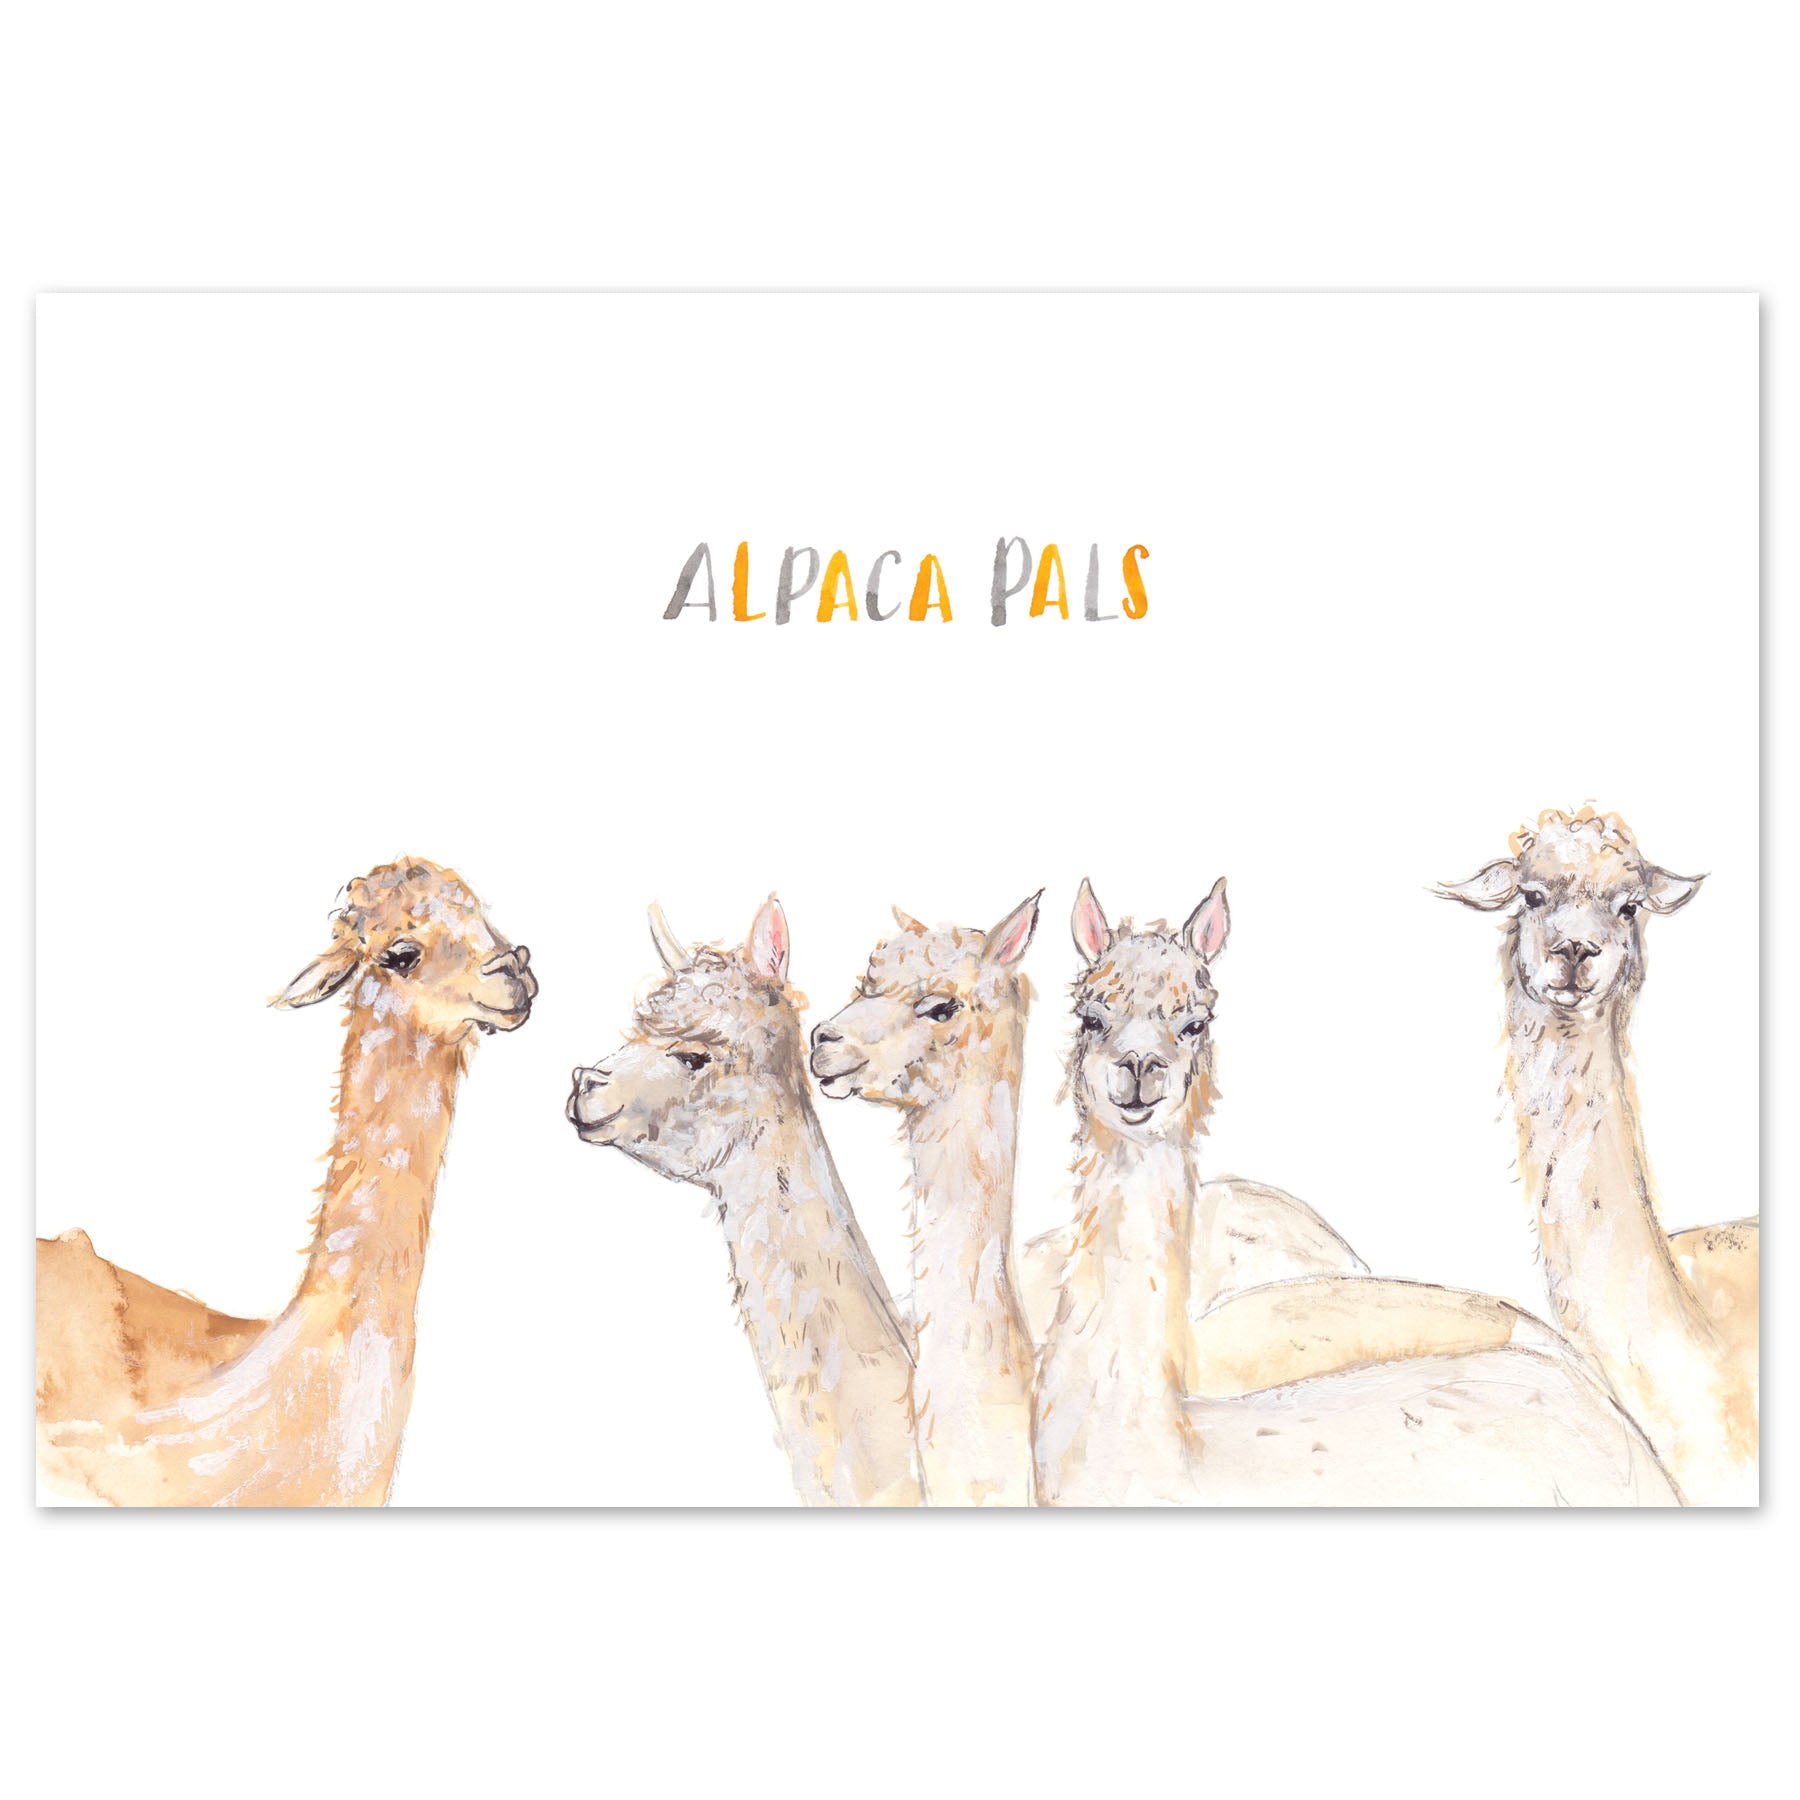 A5 Alpaca Pals Art Print